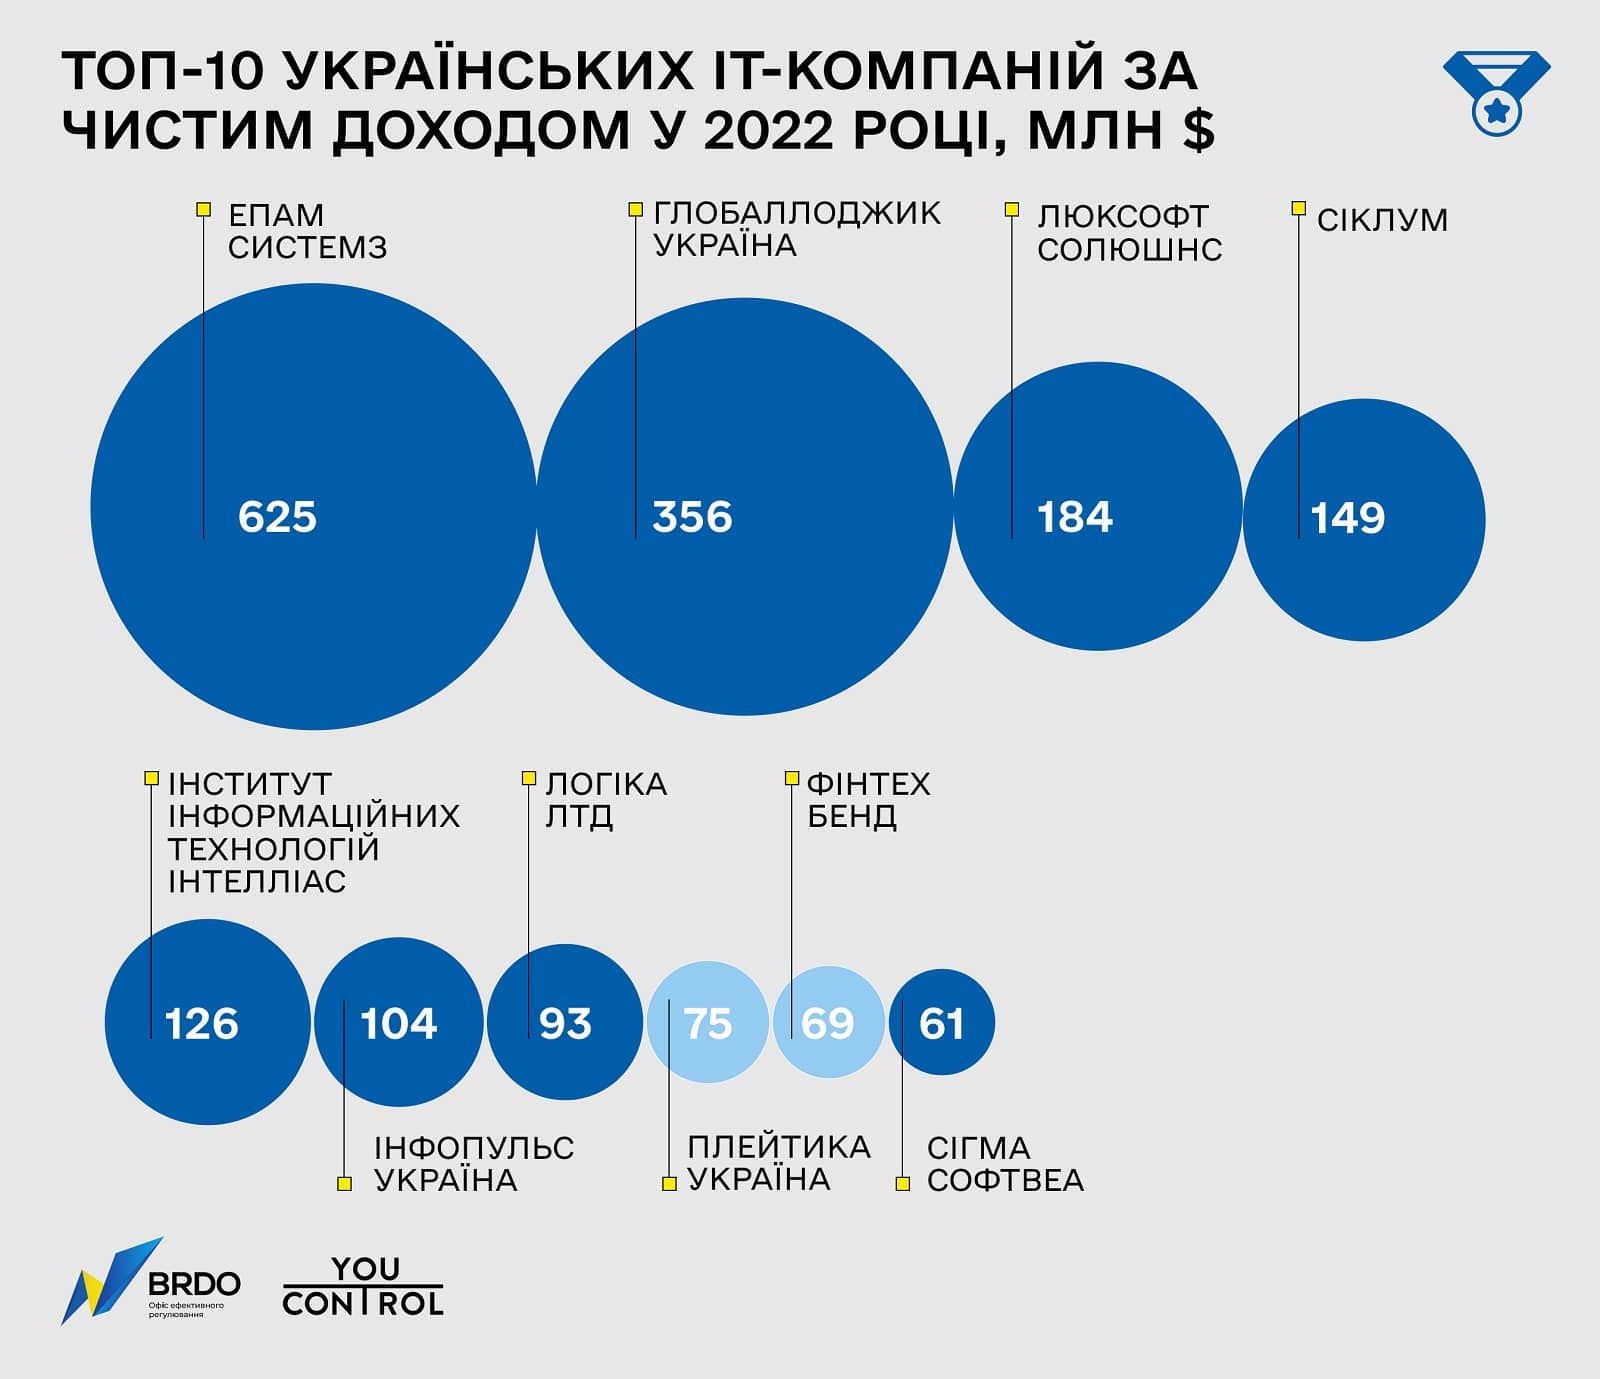 Топ-10 украинских IT-компаний по чистому доходу в 2022 году, мдн $